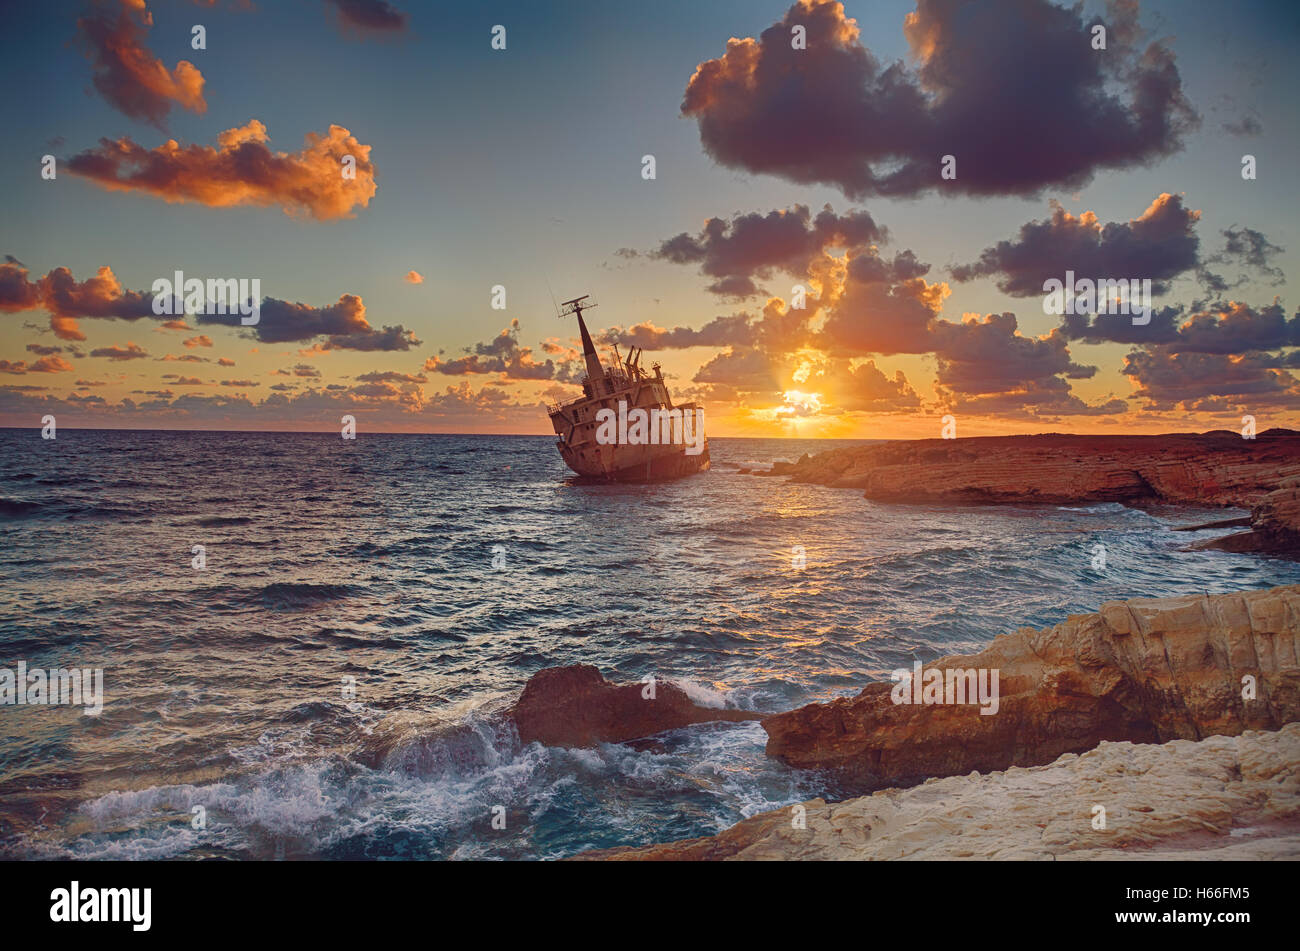 Seascape : bateau fait naufrage près de l'EDRO III rocky shore au coucher du soleil. Méditerranée, près de Paphos. Chypre Banque D'Images